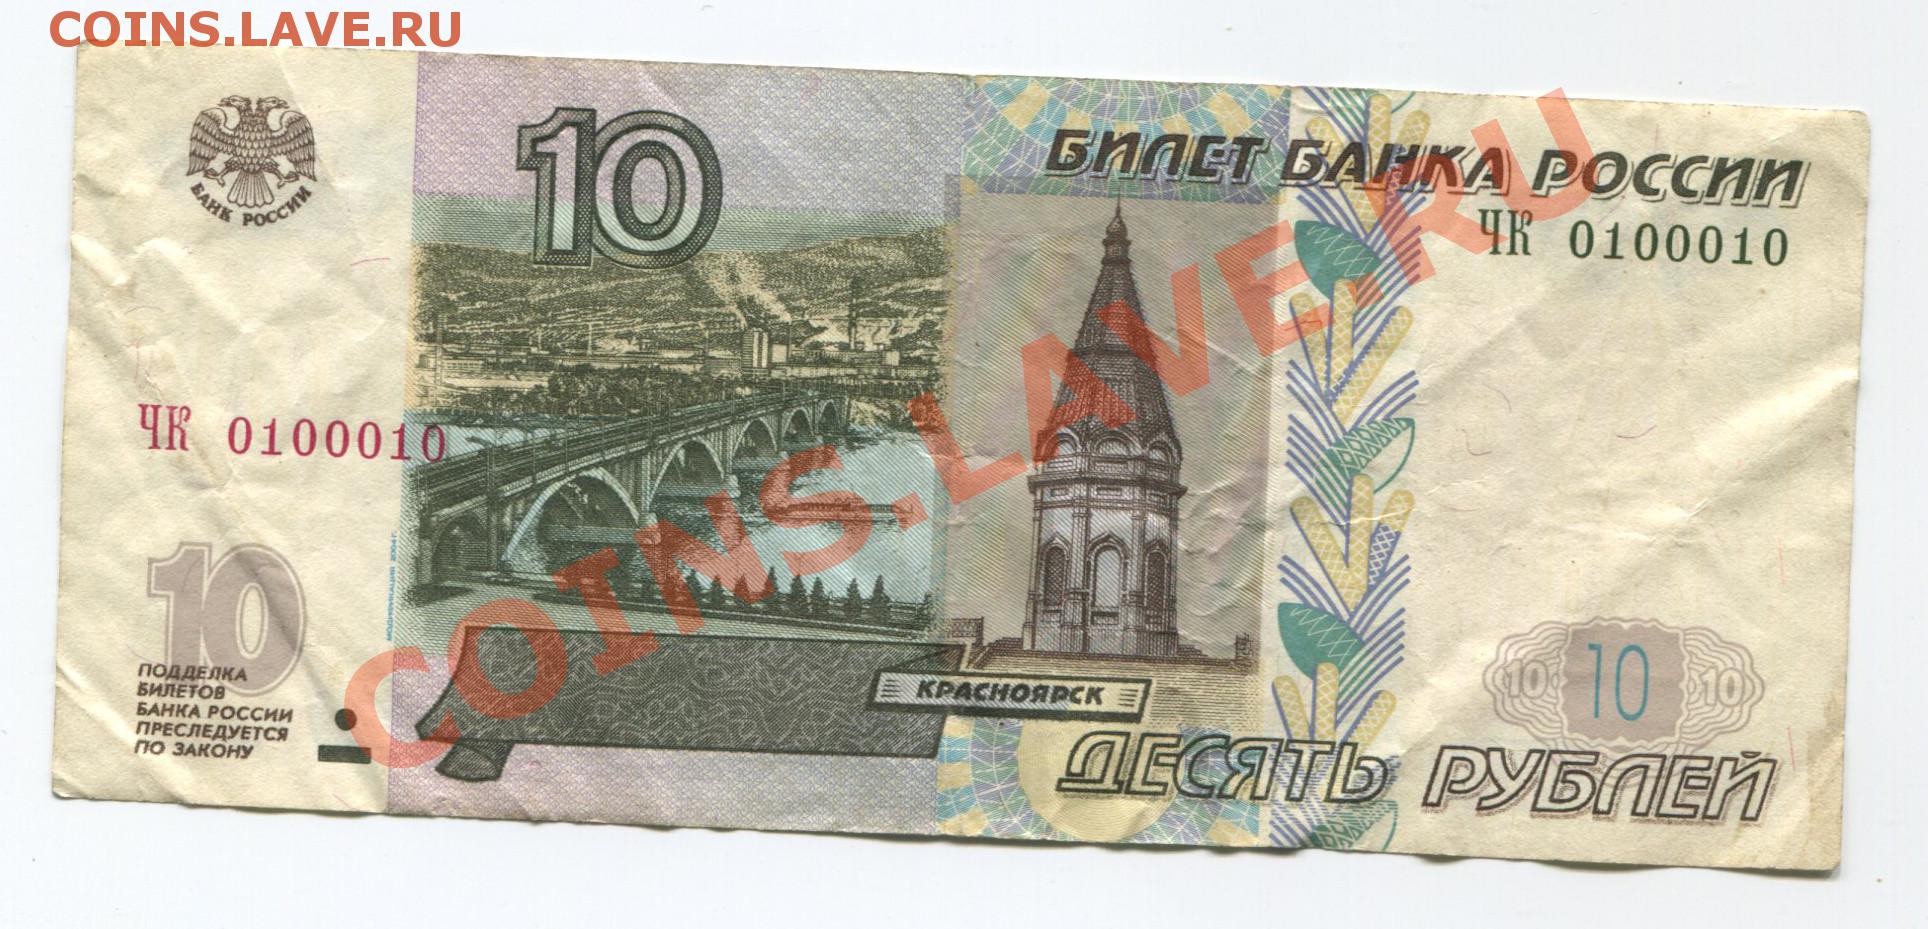 Руб ля. Что такое литера на банкноте. Деньги России до 1997. Что такое литер на банкноте. Конфигурация 2004 на купюре.